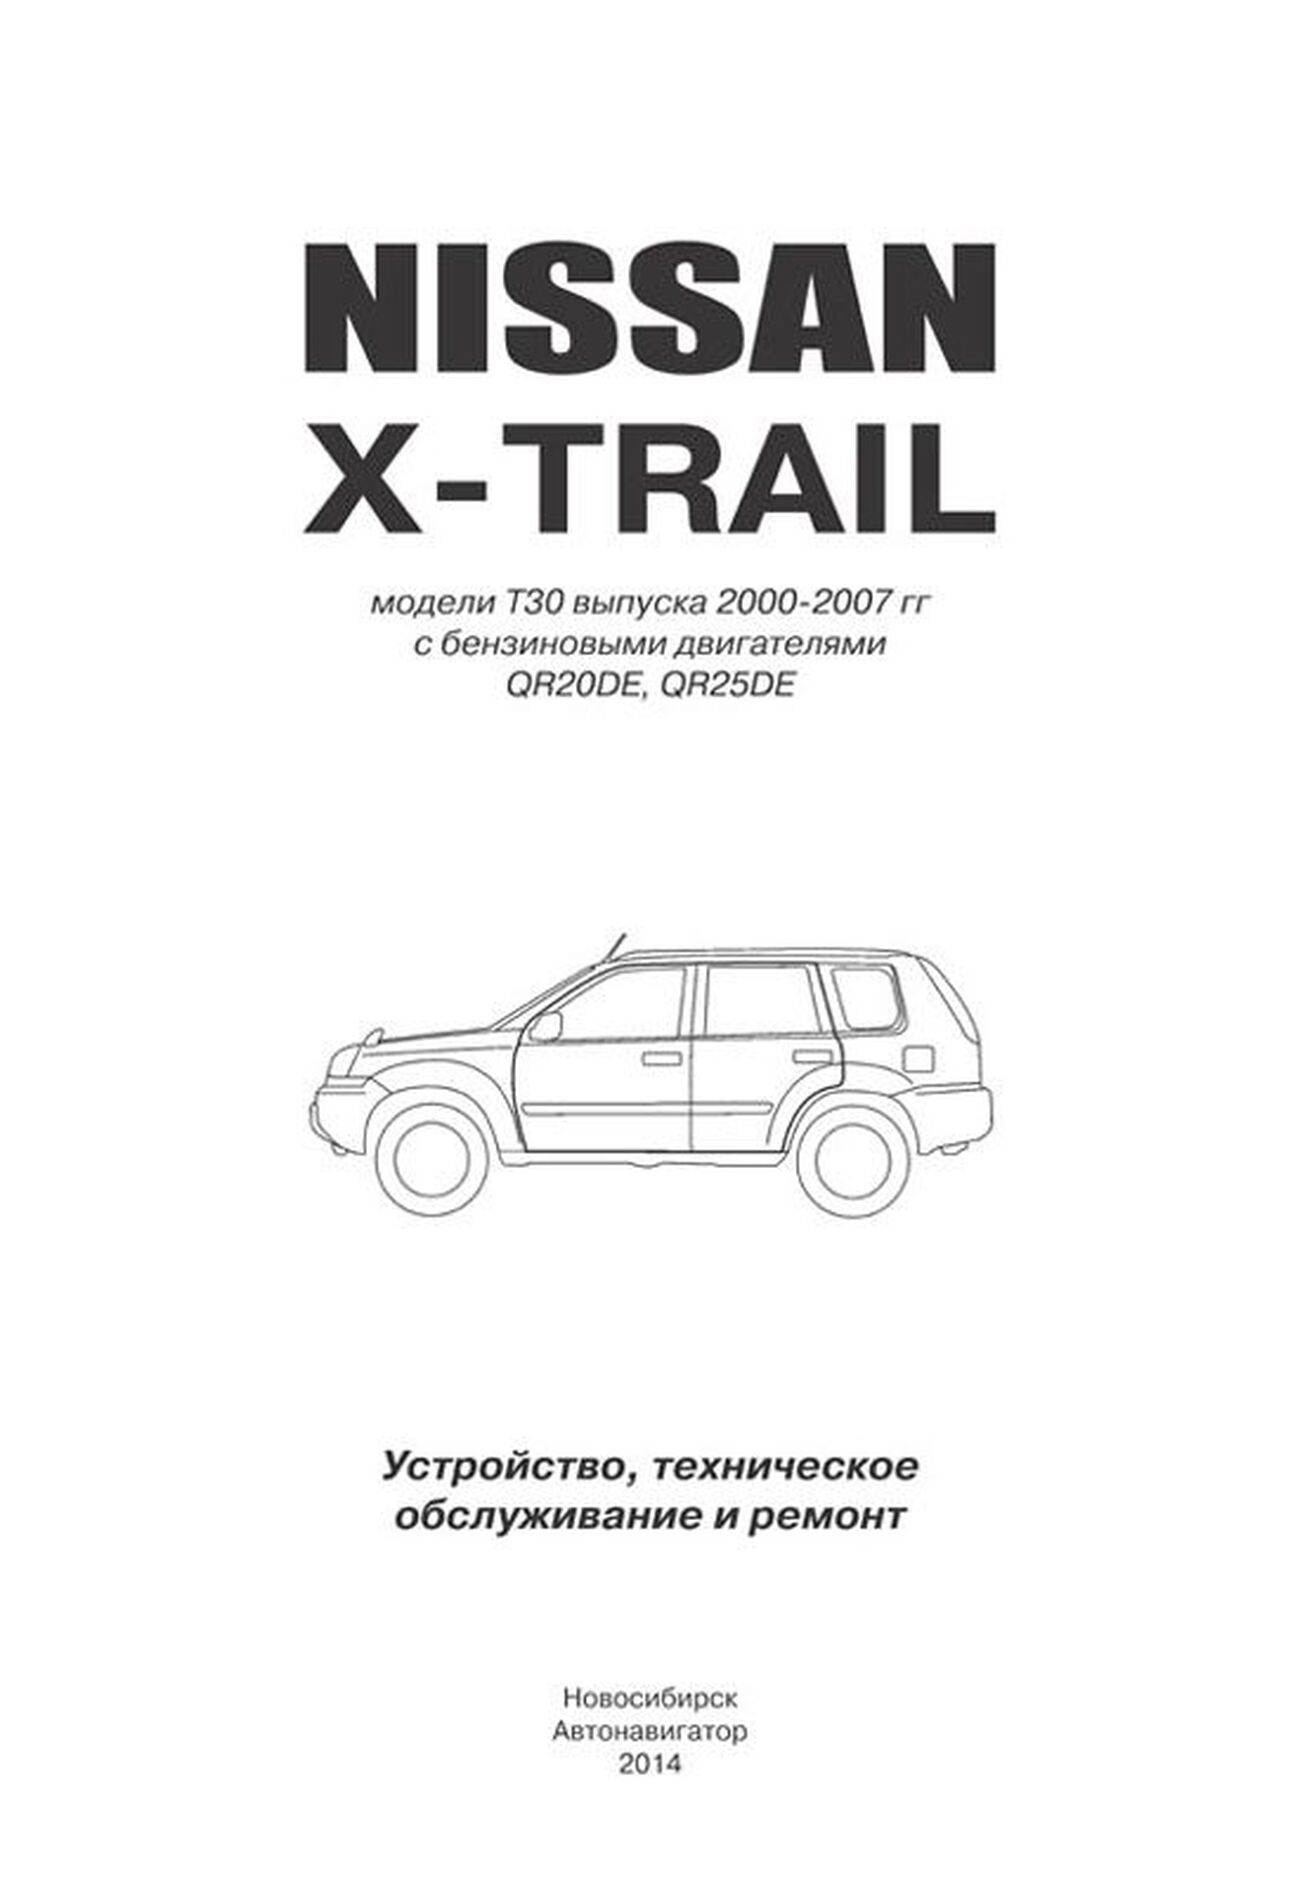 Книга: NISSAN X-TRAIL (б) 2000-2007 г.в., рем., экспл., то | Автонавигатор